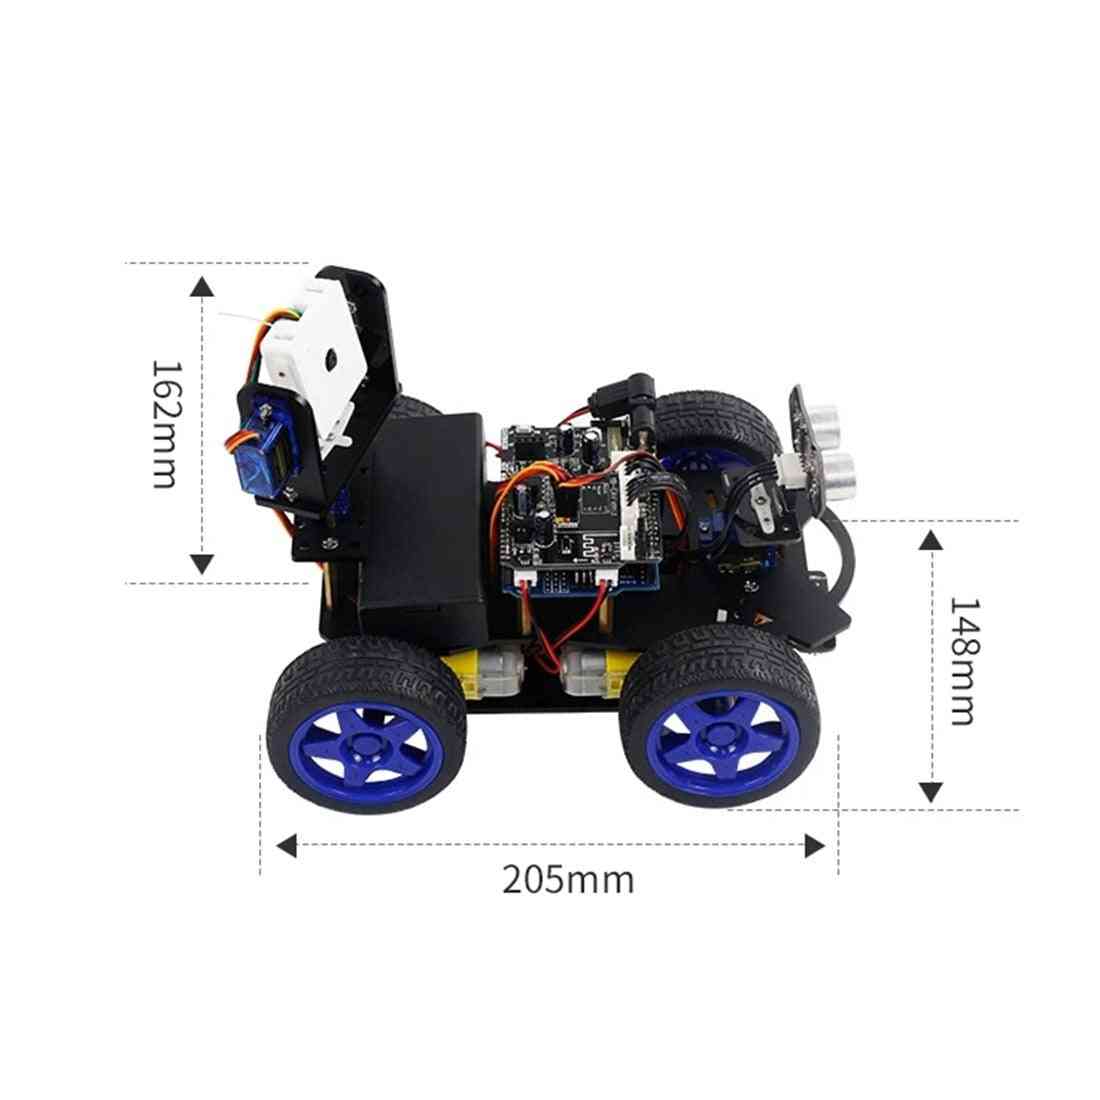 Luminiscenčni ultrazvočni modul, pameten avtomobil robot, wifi kamera, komplet gimbala za arduino